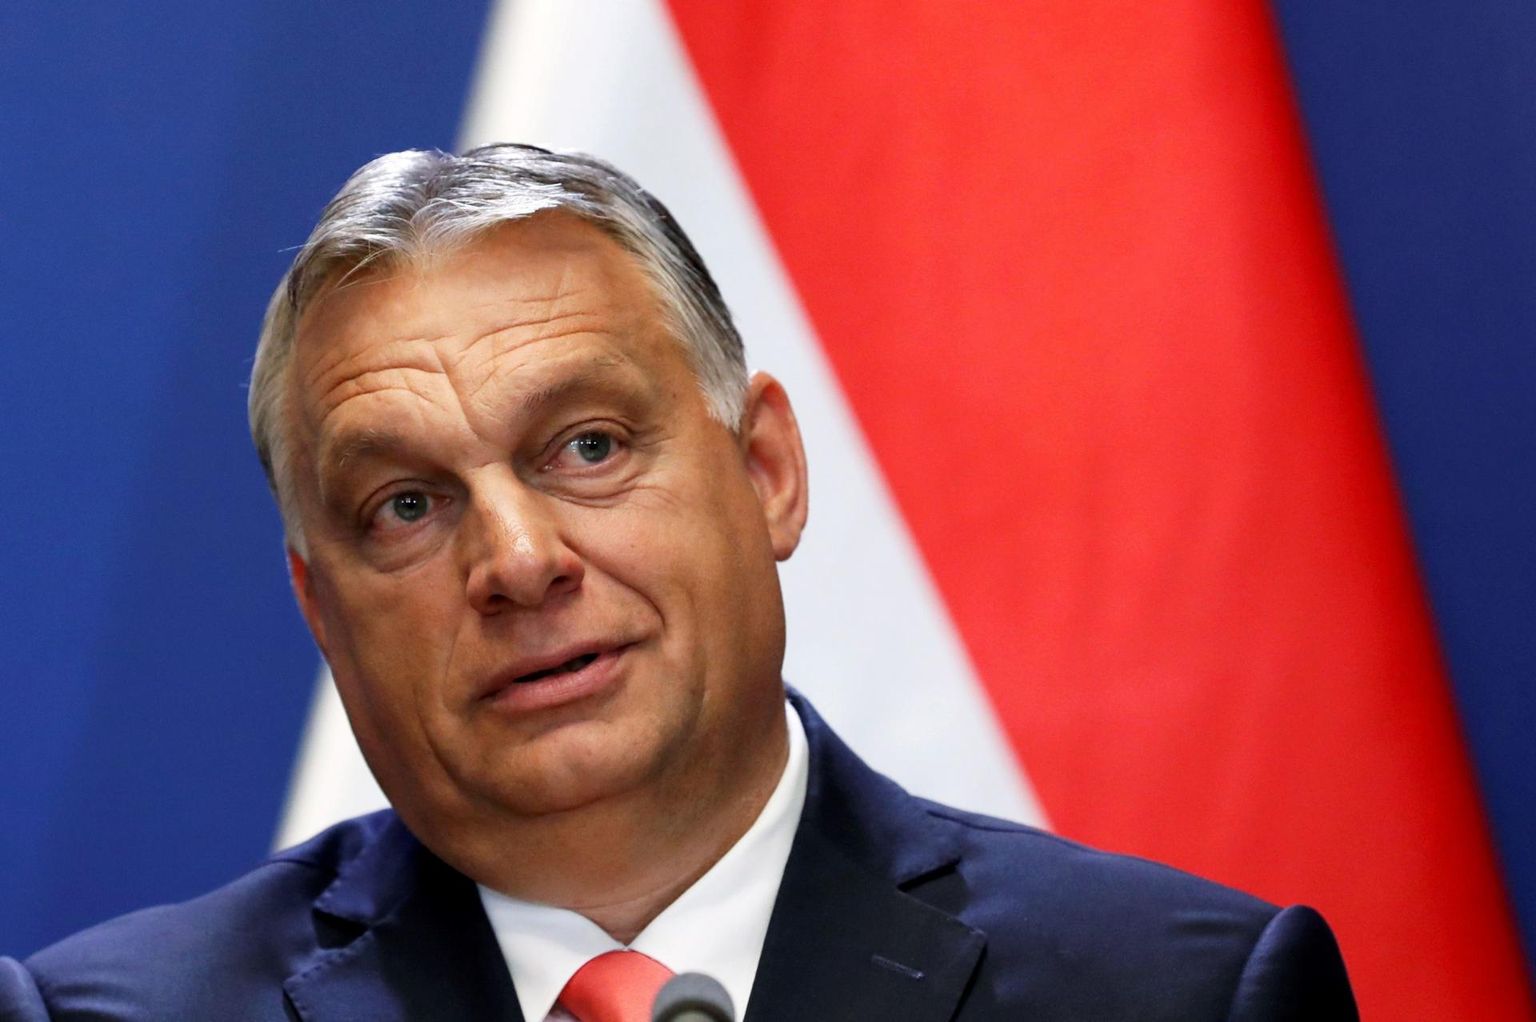 Ungari peaminister Viktor Orbán on riigi poliitikas tähtsat rolli mänginud 1988. aastast saadik, kuid teinud mitu poliitilist meelemuutust. 